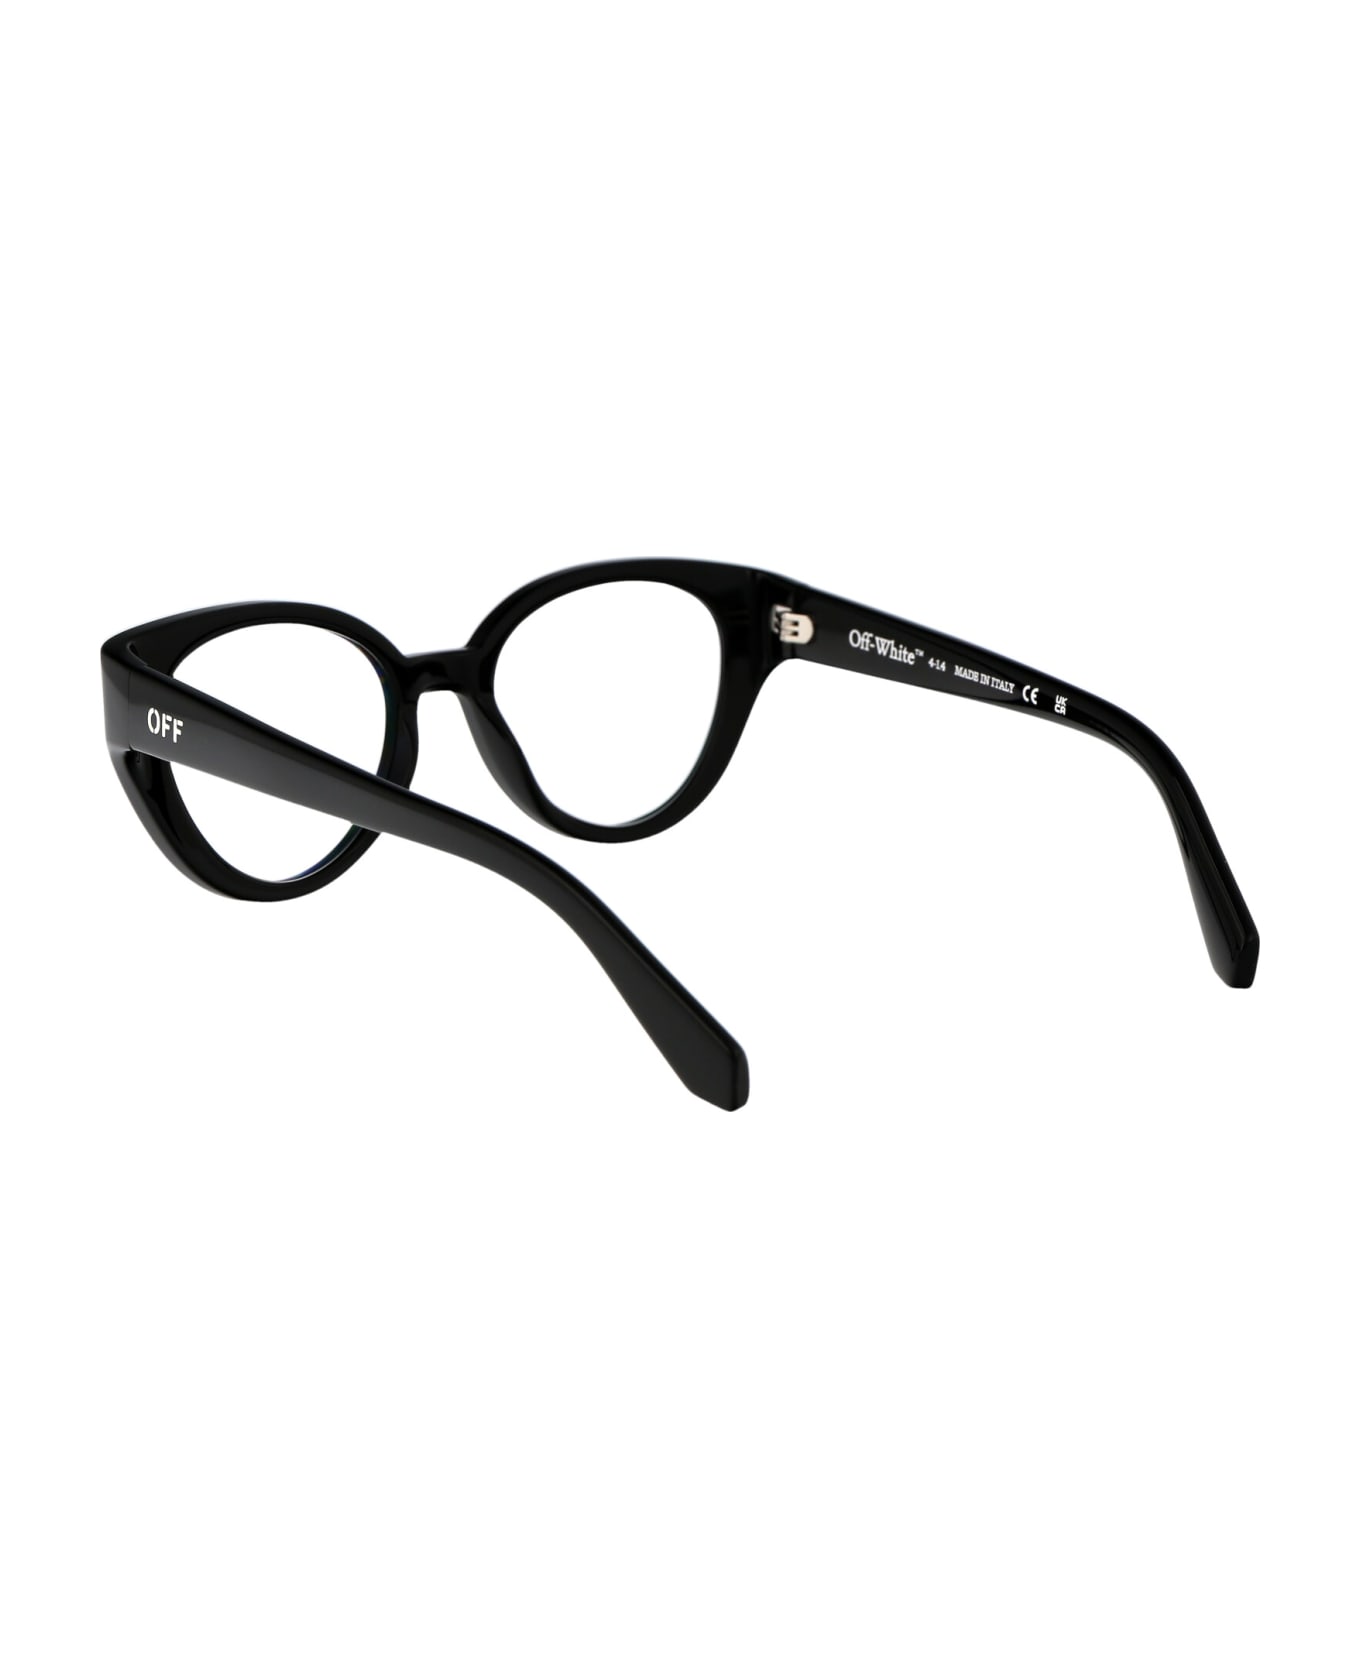 Off-White Optical Style 62 Glasses - 1000 BLACK アイウェア